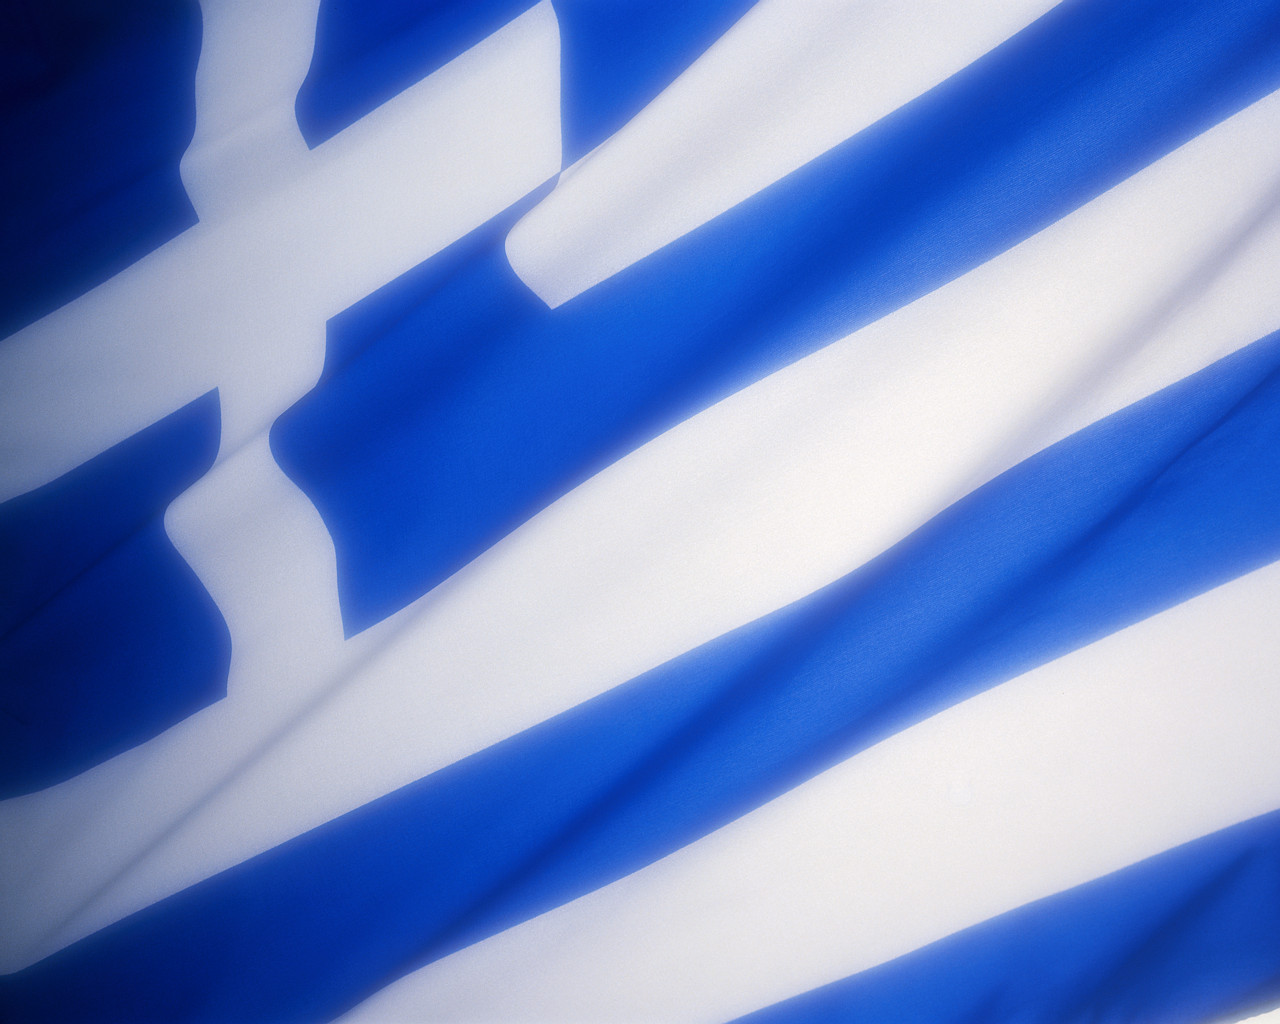 http://2.bp.blogspot.com/-A09URu8Kn1g/T9dj7dODhmI/AAAAAAAAAAw/69gkKnzQCv4/s1600/Wallpapers+Flag+of++Greece+Flag+Graphics+%287%29.jpg